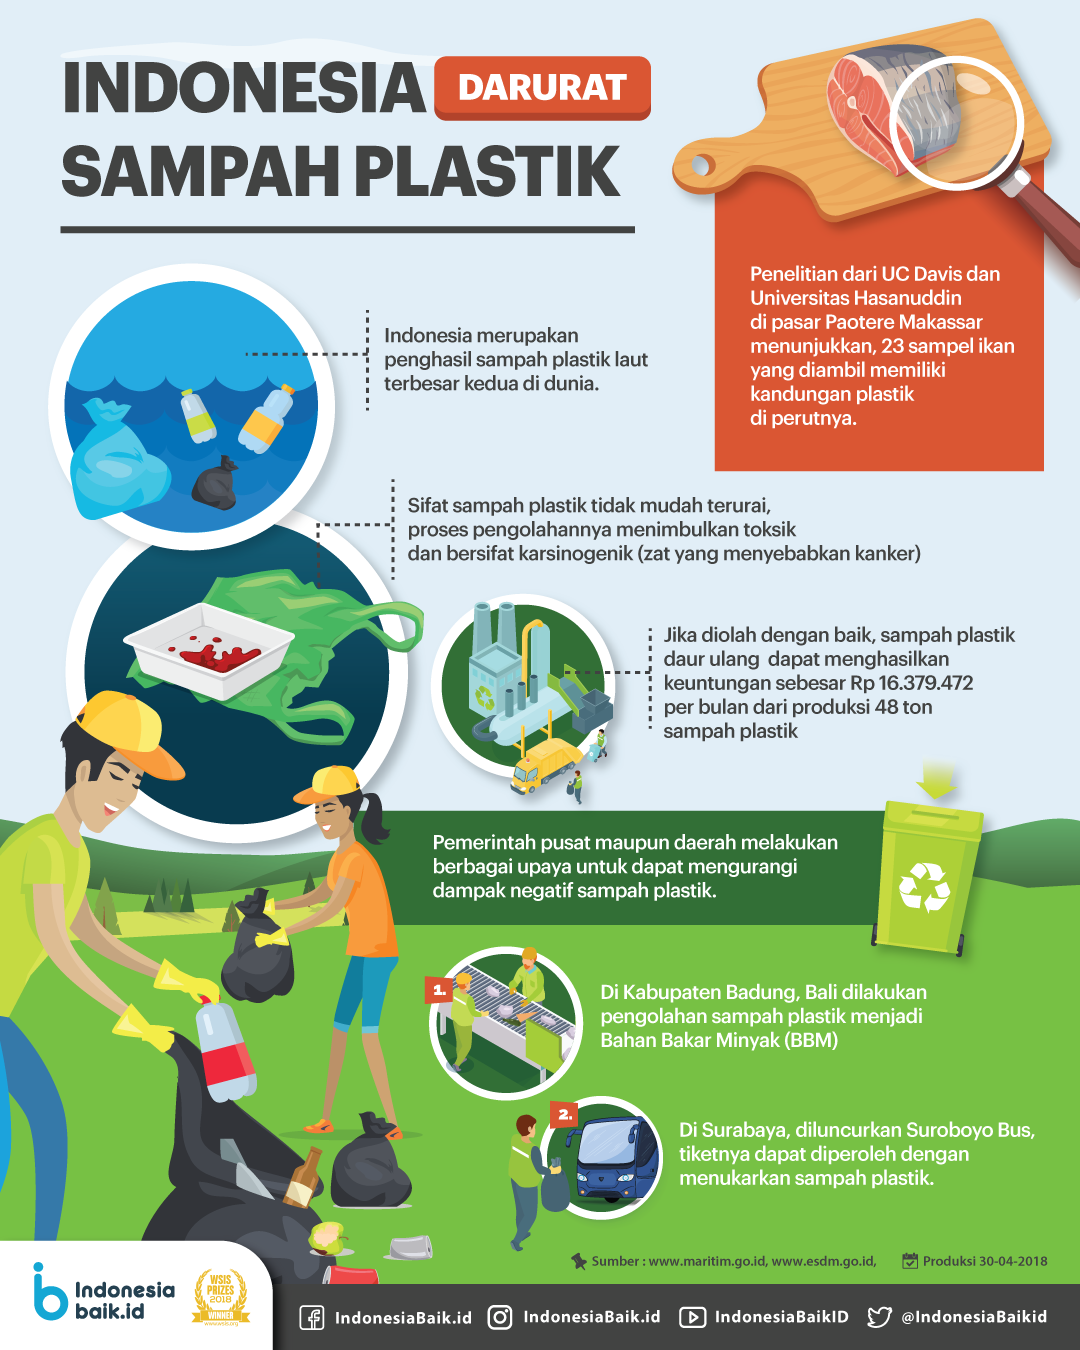 Indonesia Darurat Sampah Plastik Stop Buang Sampah Sembarangan My Xxx